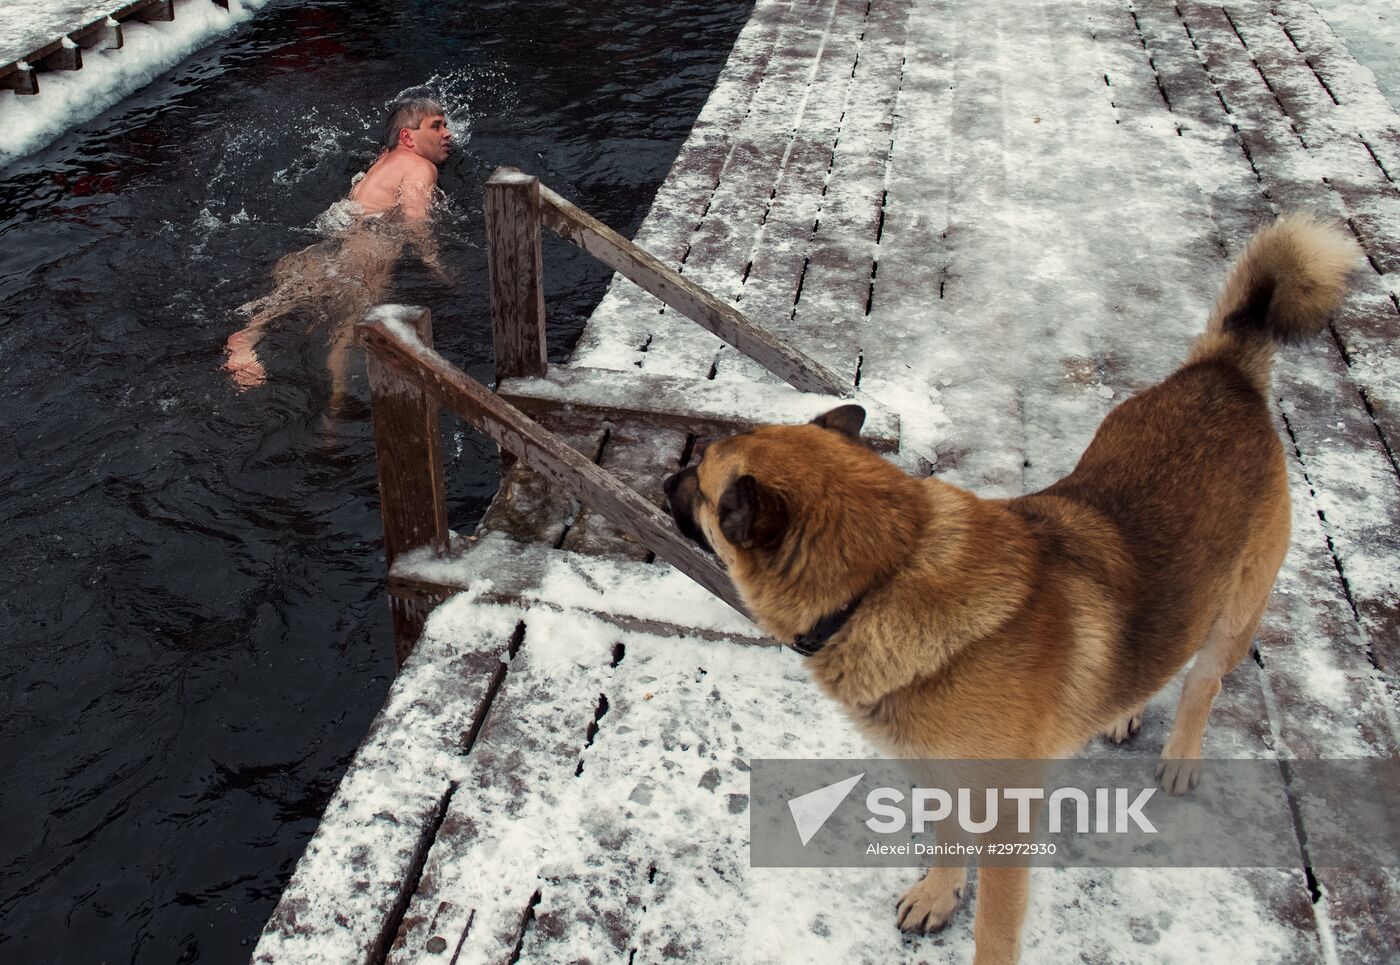 Ledostav (Freezing Over) winter swimming festival in St. Petersburg